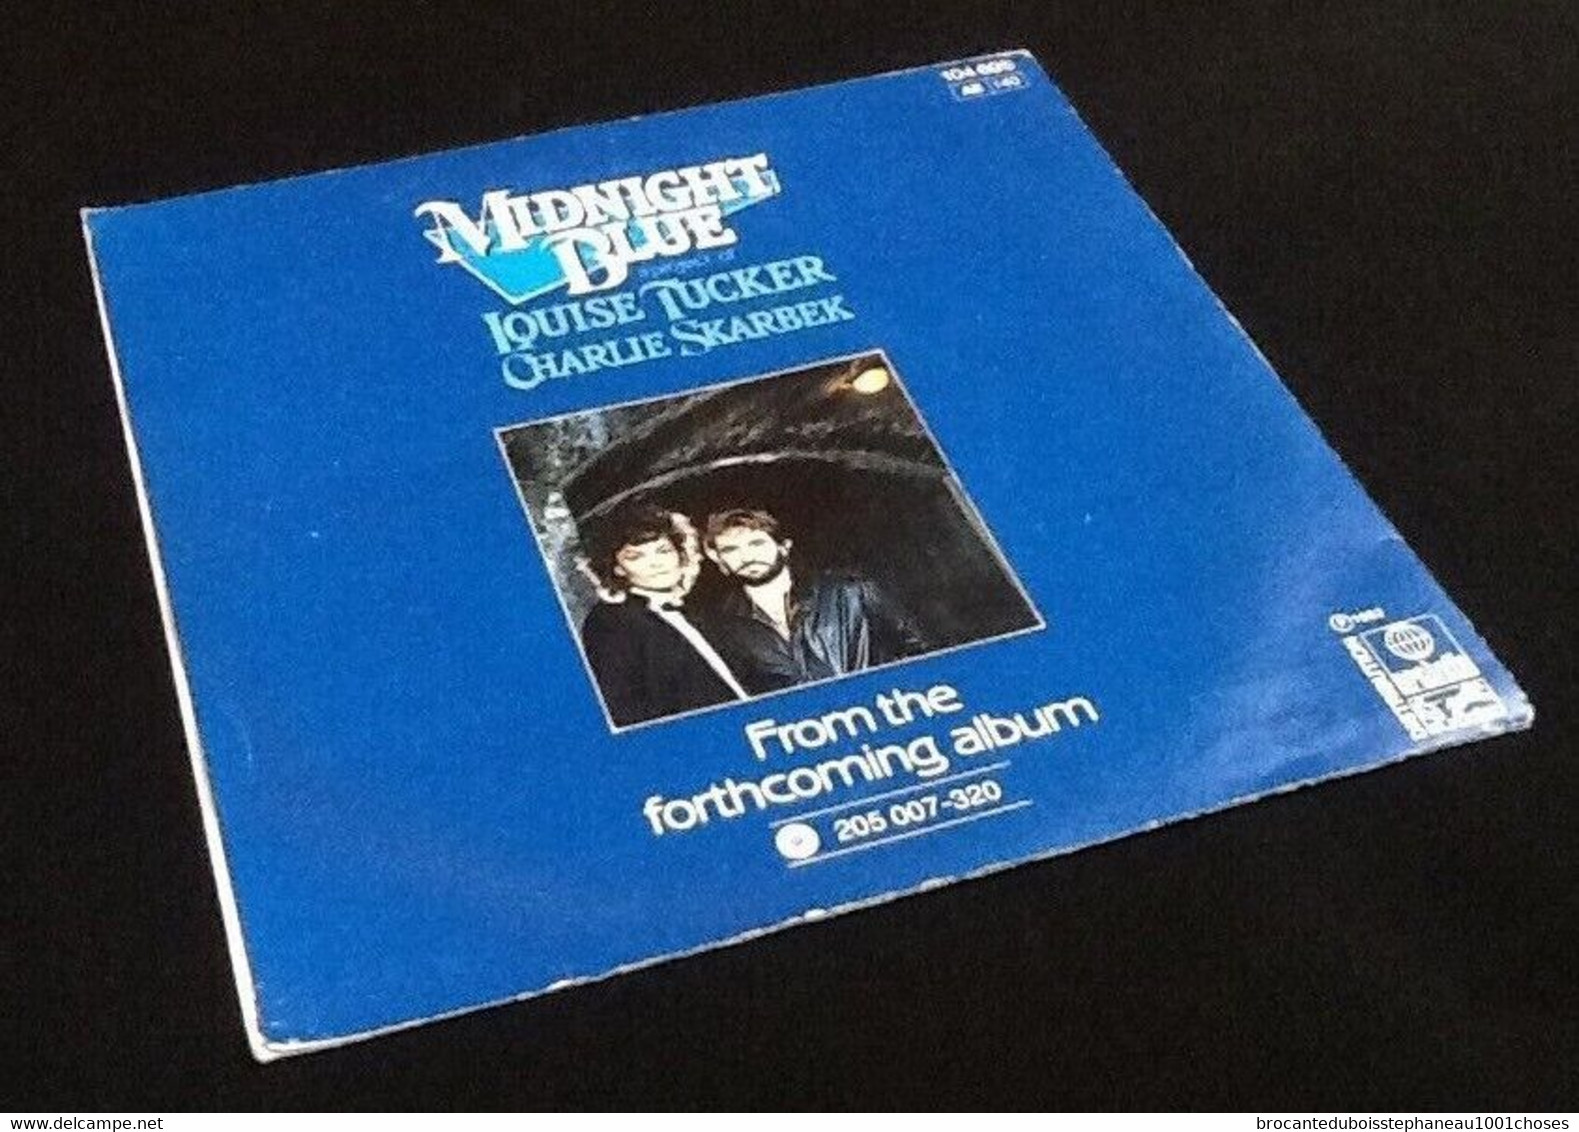 Vinyle 45 Tours   Louise Tucker   Midnight Blue    (1982)  Arabella 2005007320 - Opera